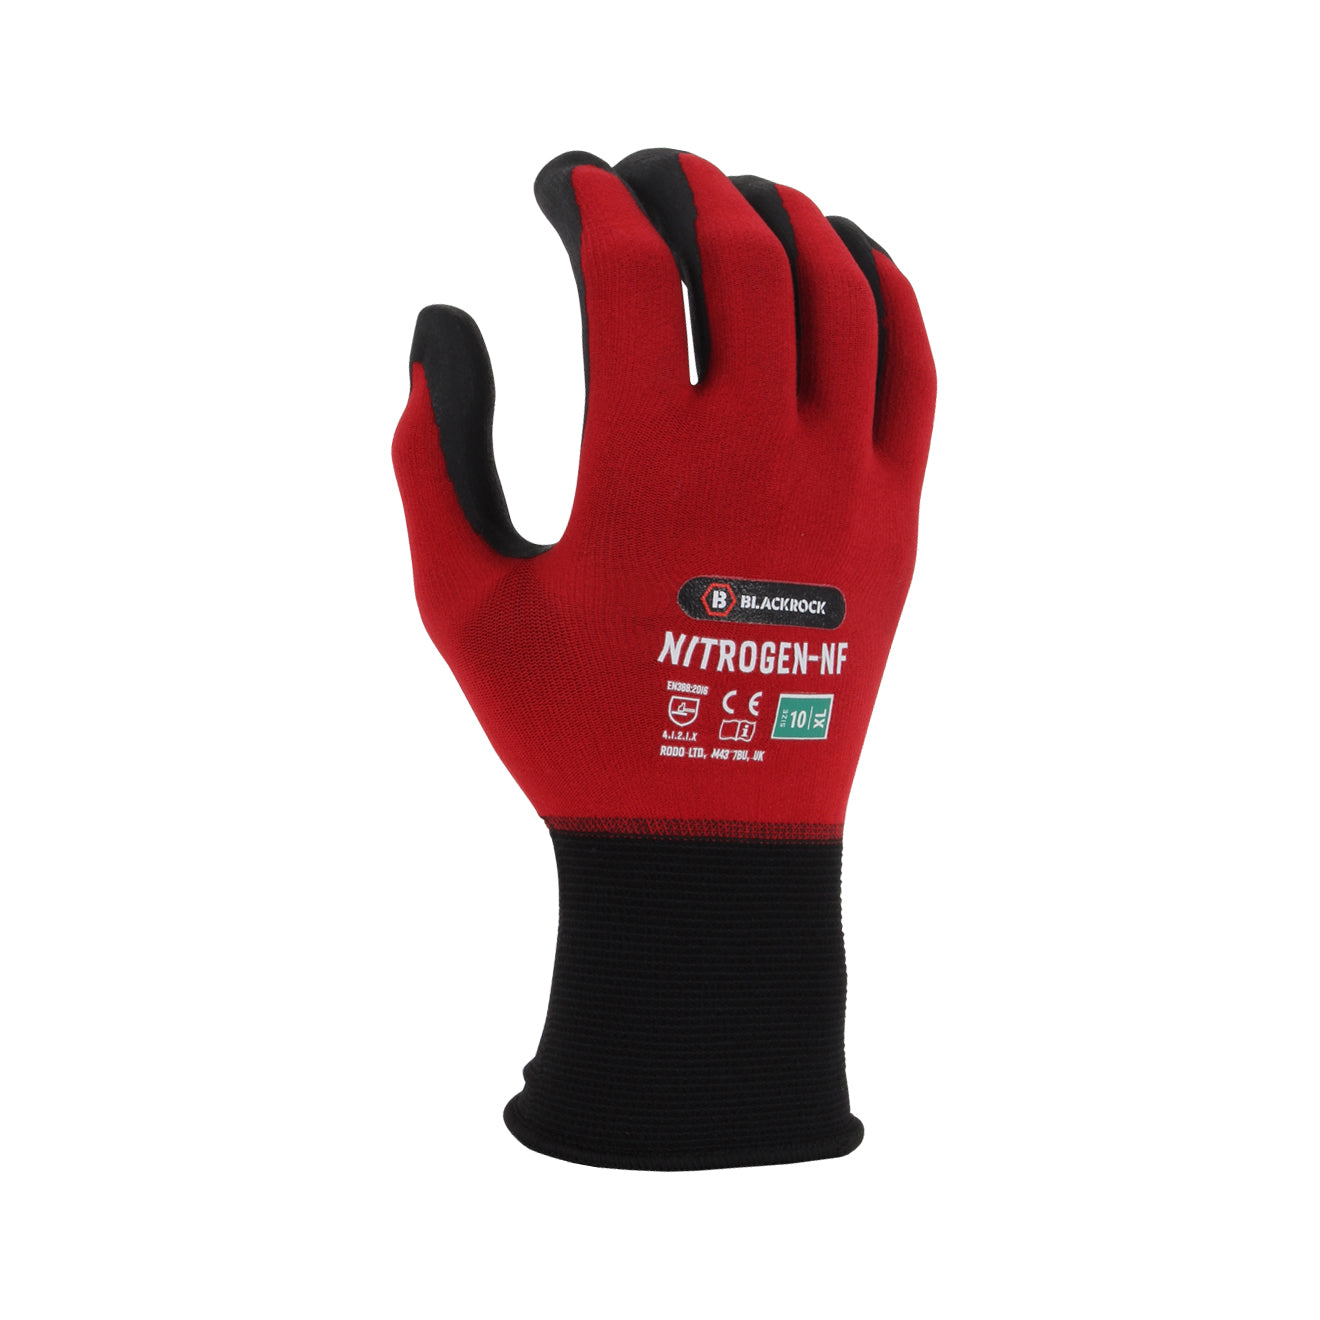 Blackrock Nitrogen NF Nitrile Foam Gloves Red 2#colour_red